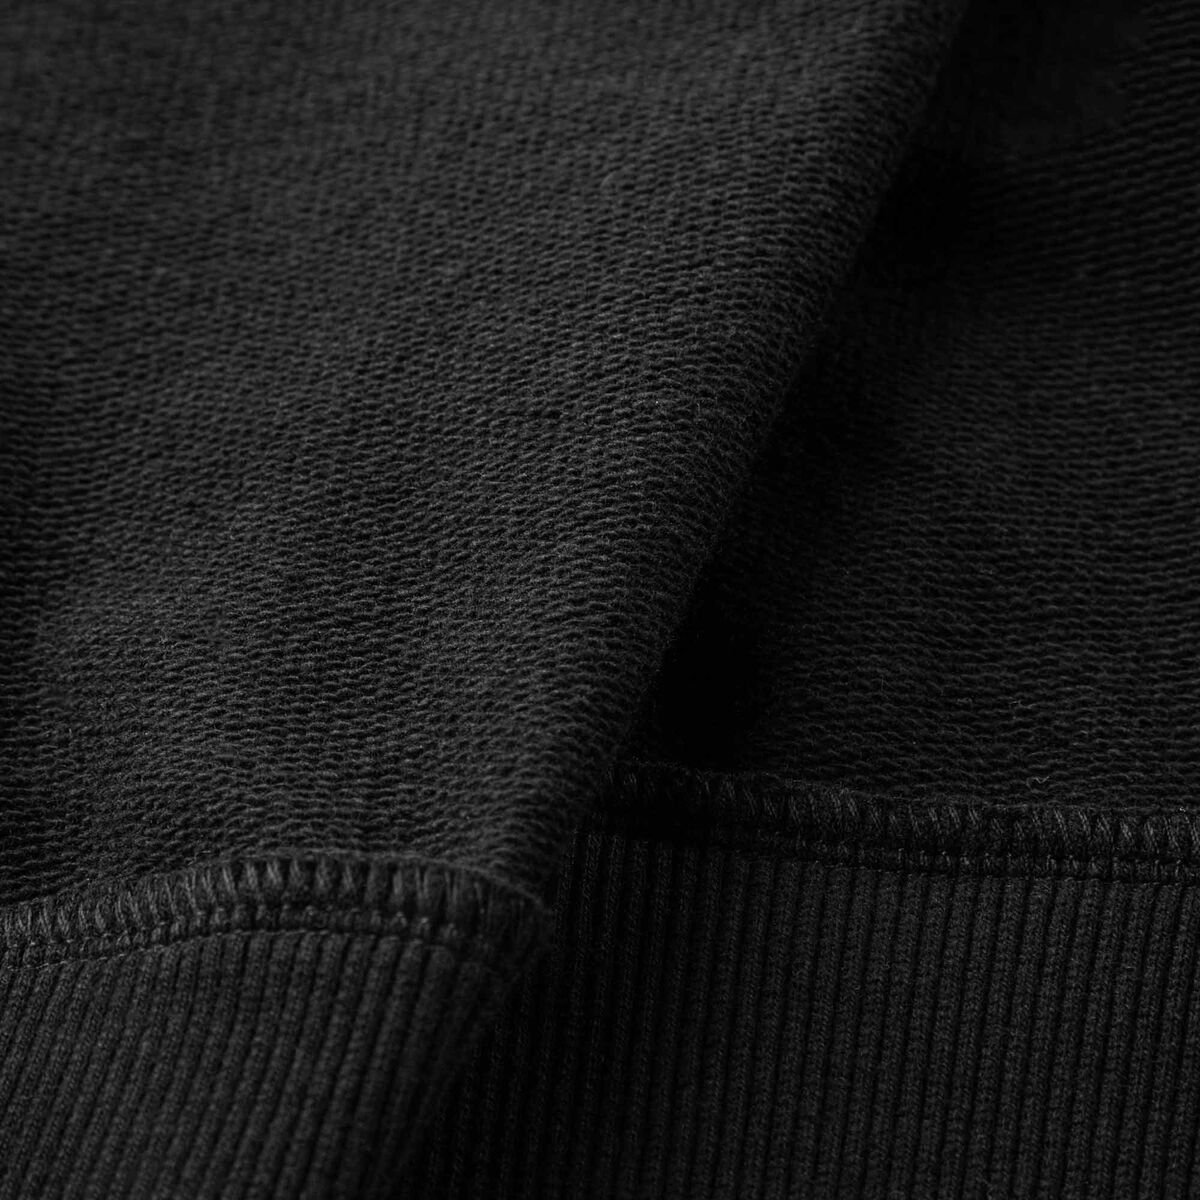 Rossignol Herrensweatshirt aus Baumwolle mit Logo und Rundhalsausschnitt black